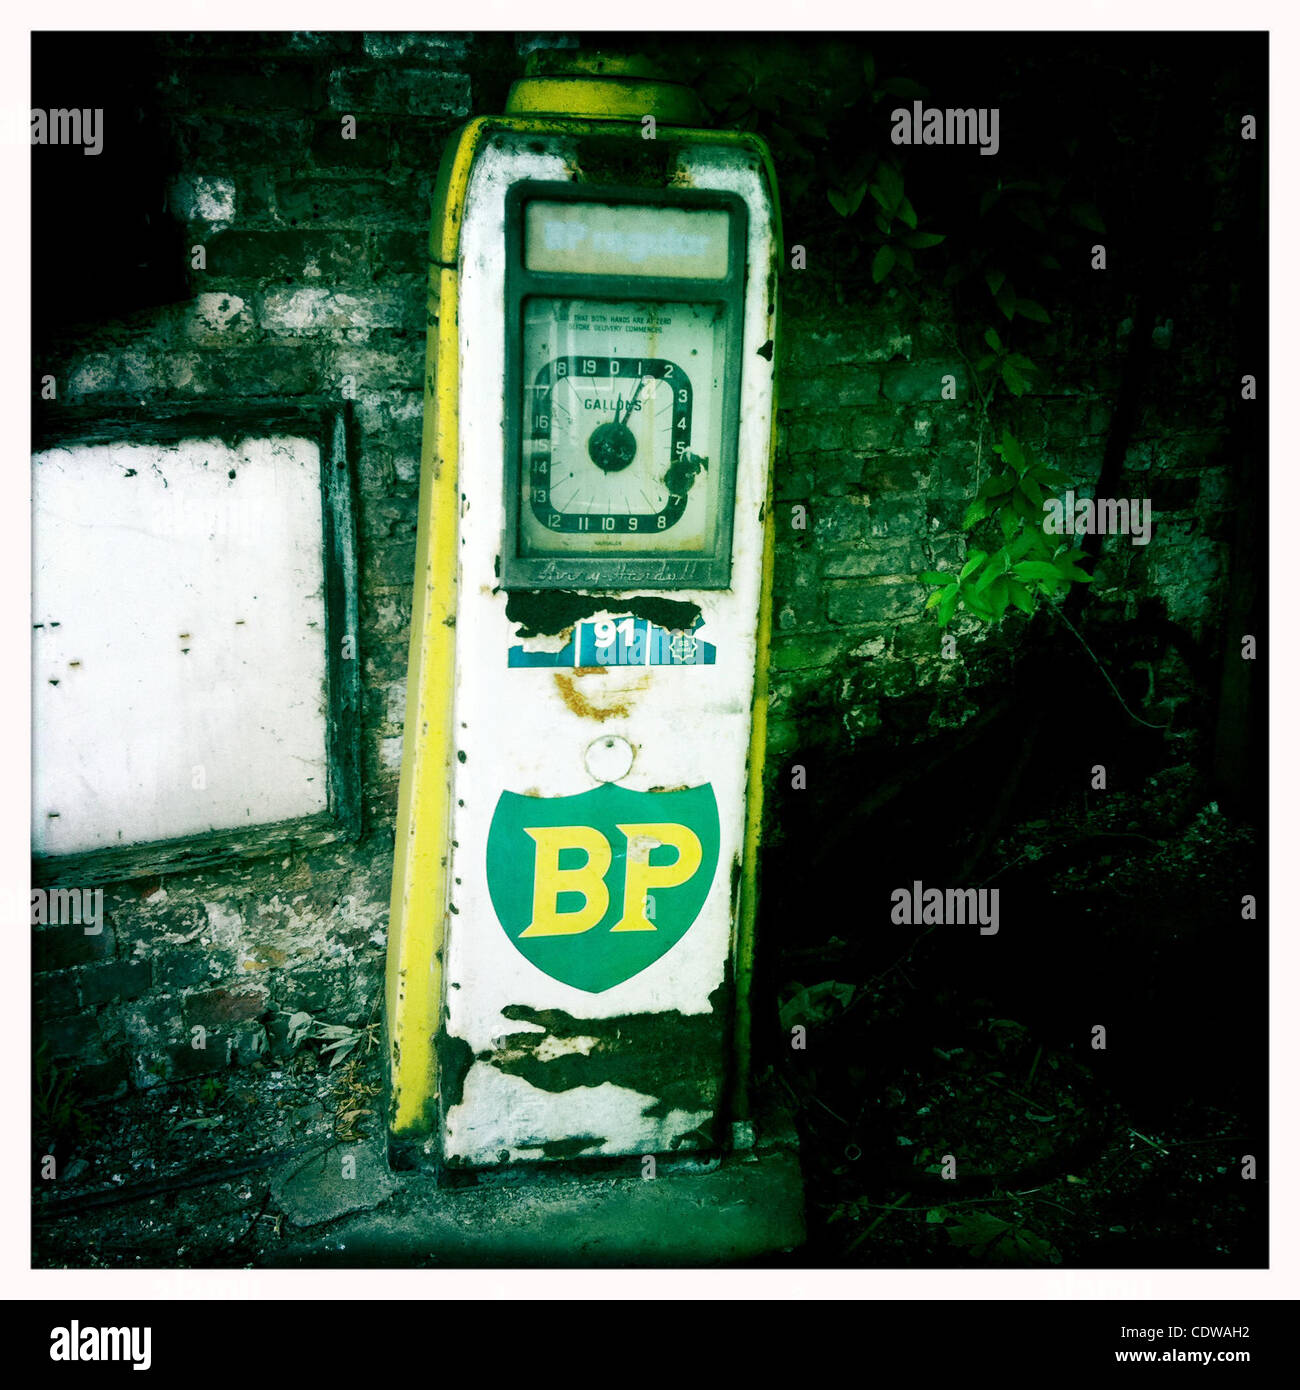 09 juillet 2011 - Nayland, Royaume-Uni - Une ancienne pompe à essence analogique station essence BP, Nayland, UK. (Crédit Image : &# 169 ; Veronika Lukasova/ZUMAPRESS.com) Banque D'Images